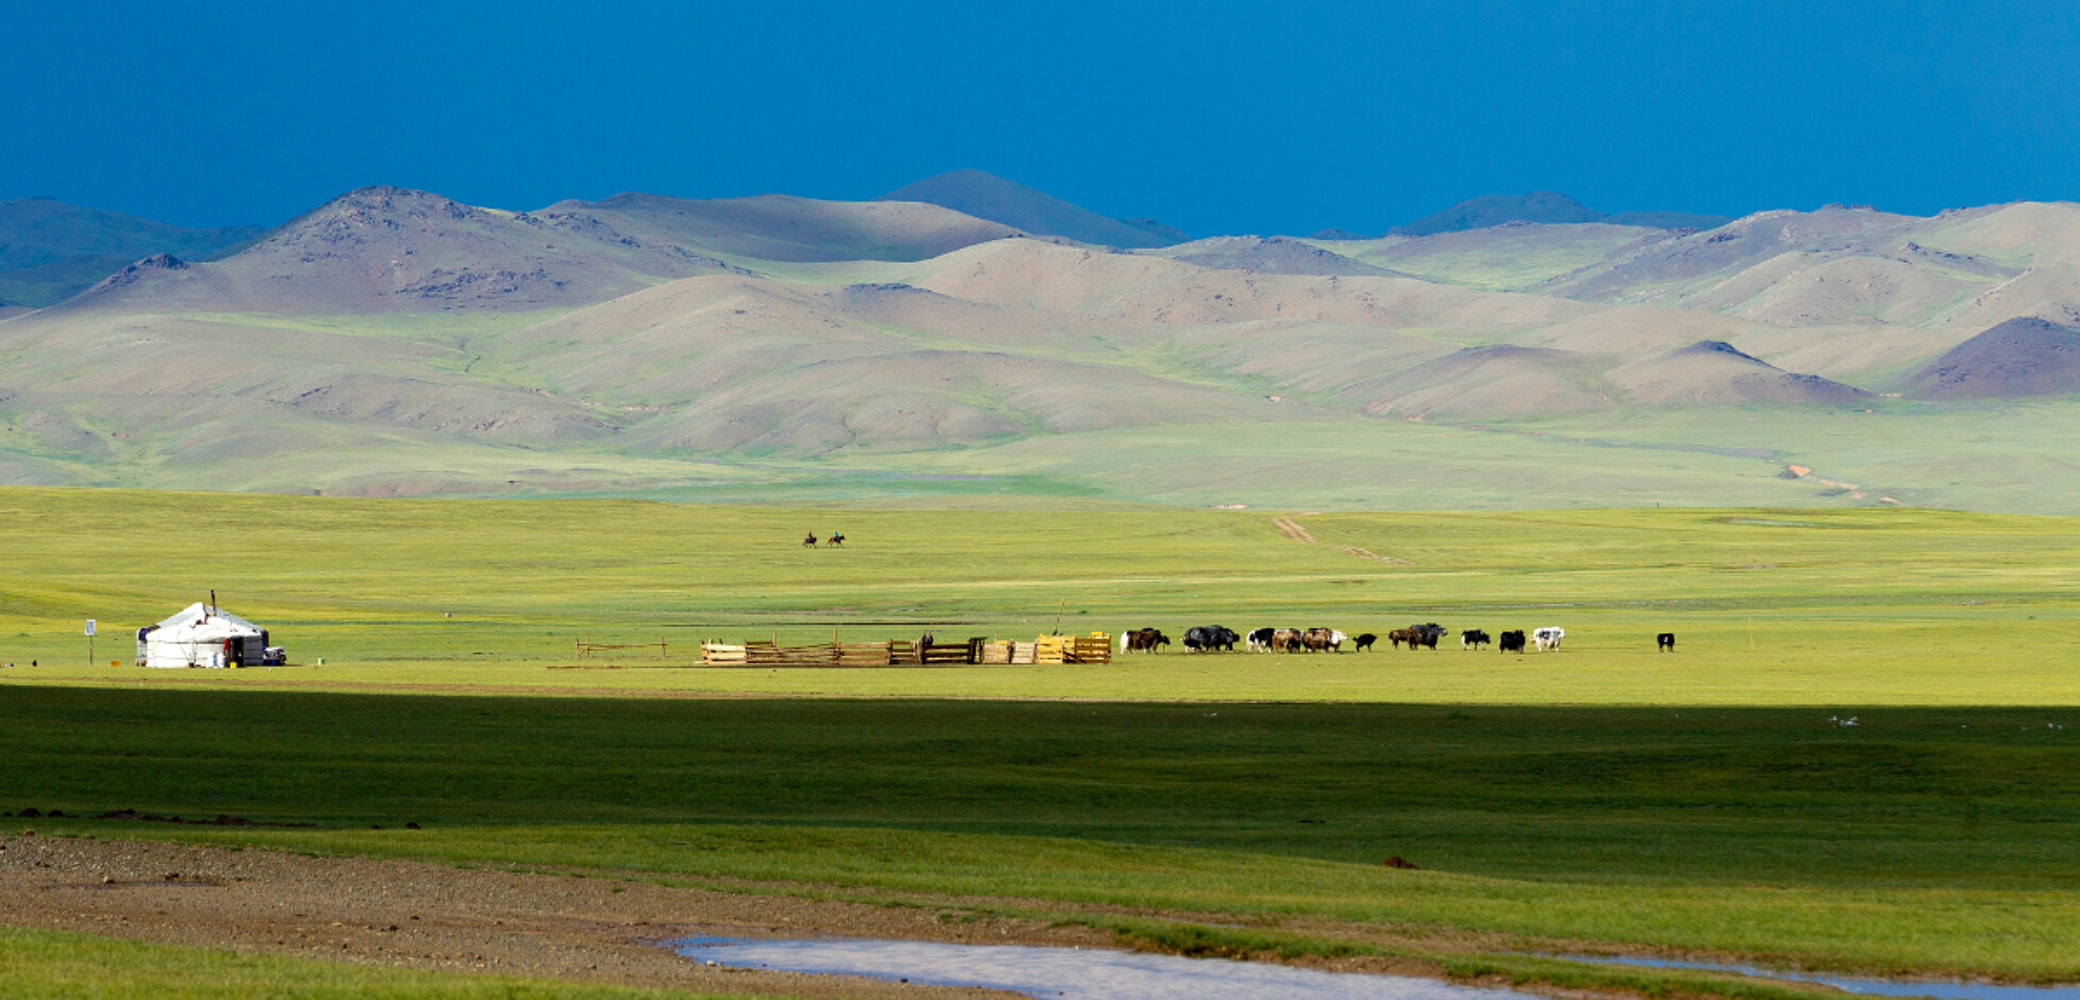 Bienvenue dans les steppes de Mongolie !